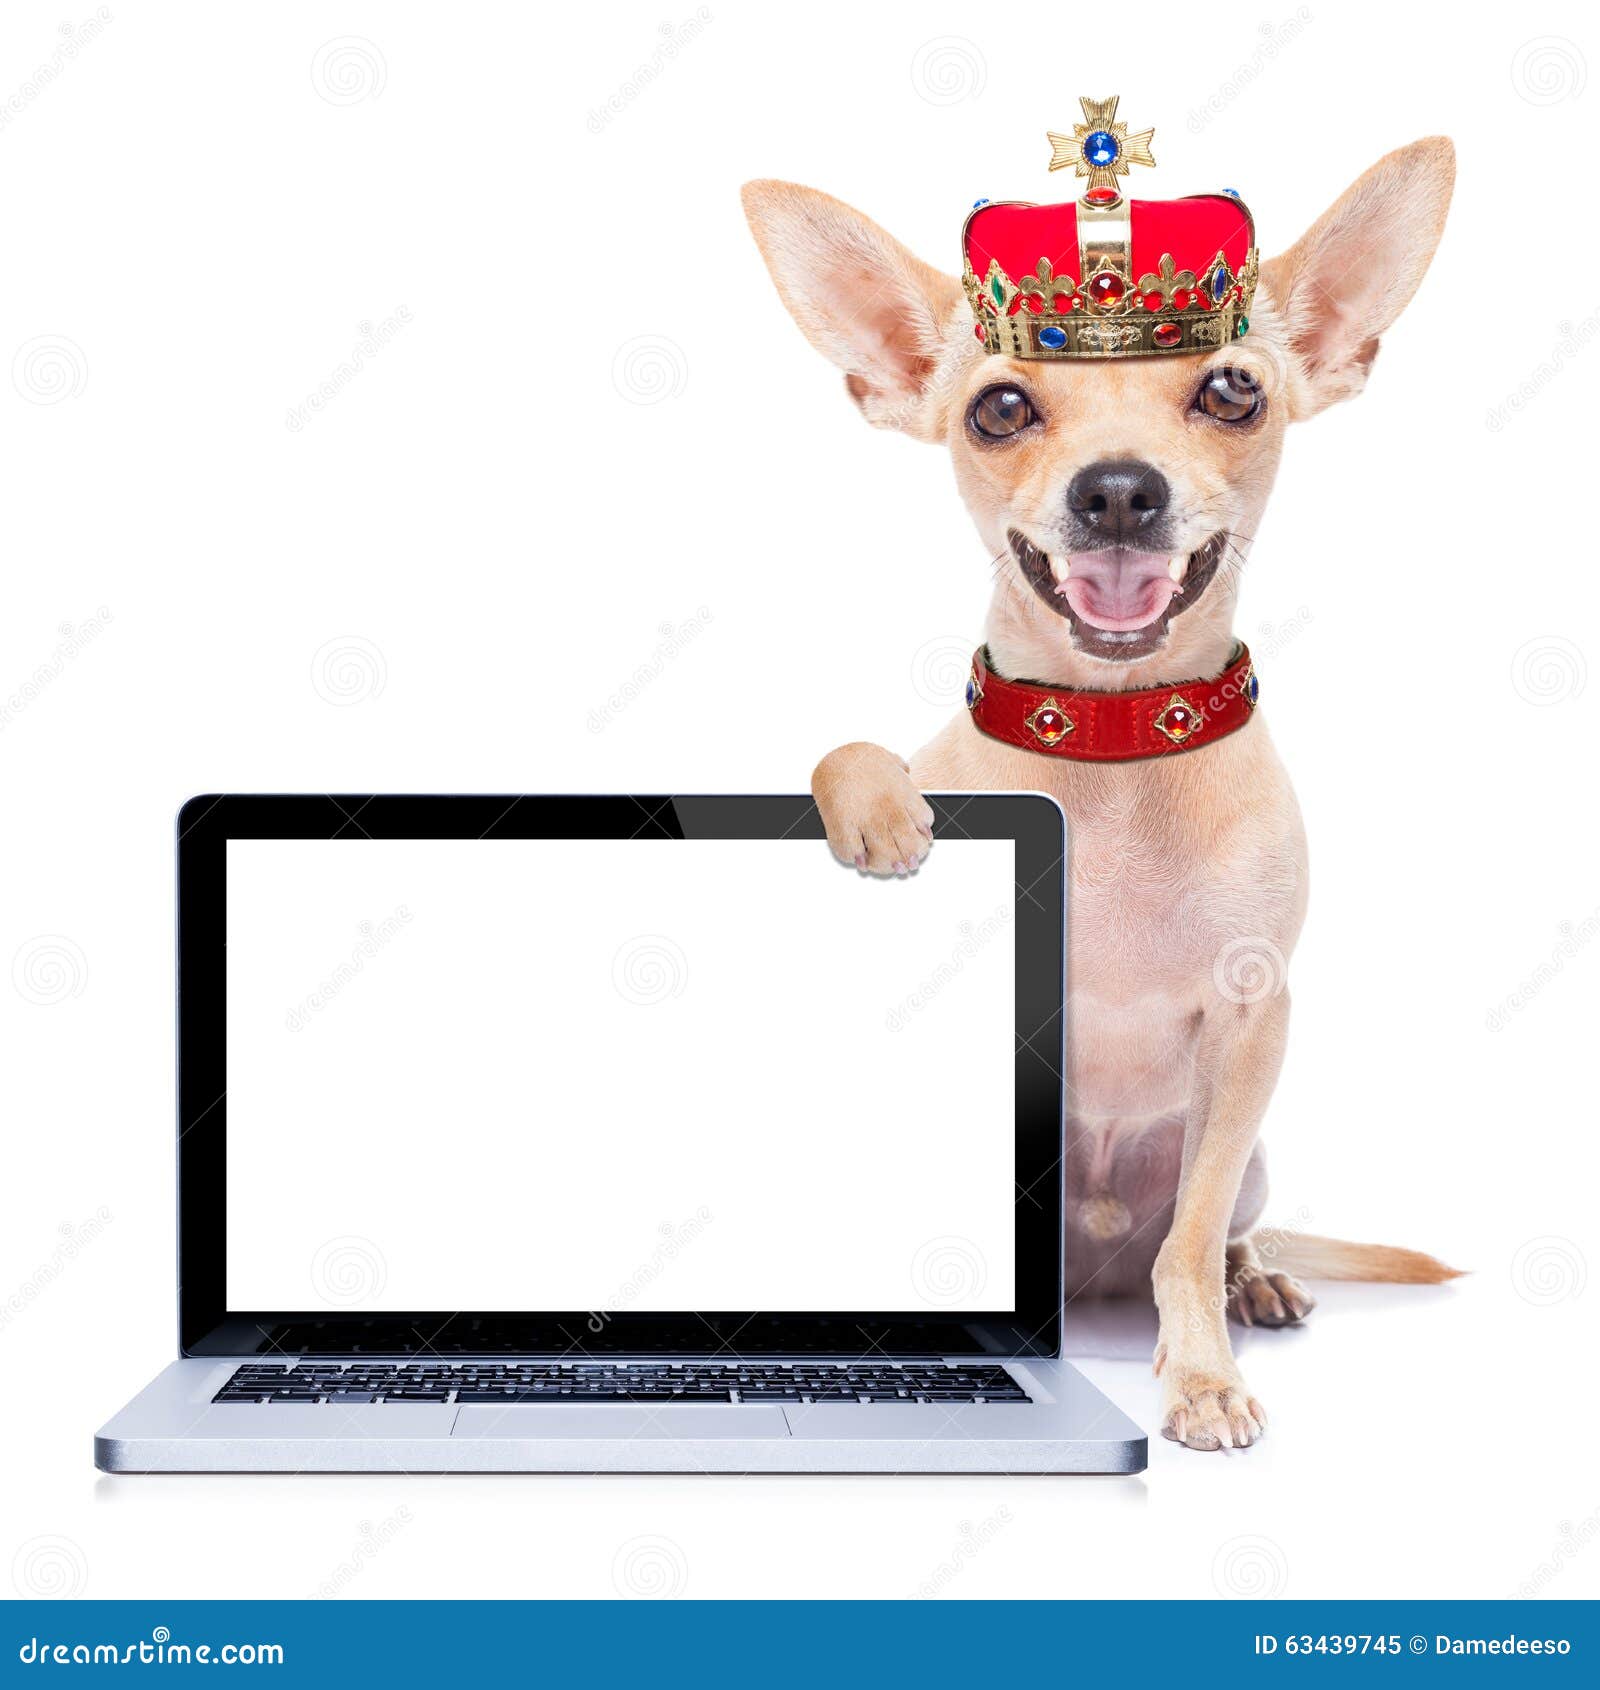 perro-del-rey-de-la-corona-63439745.jpg